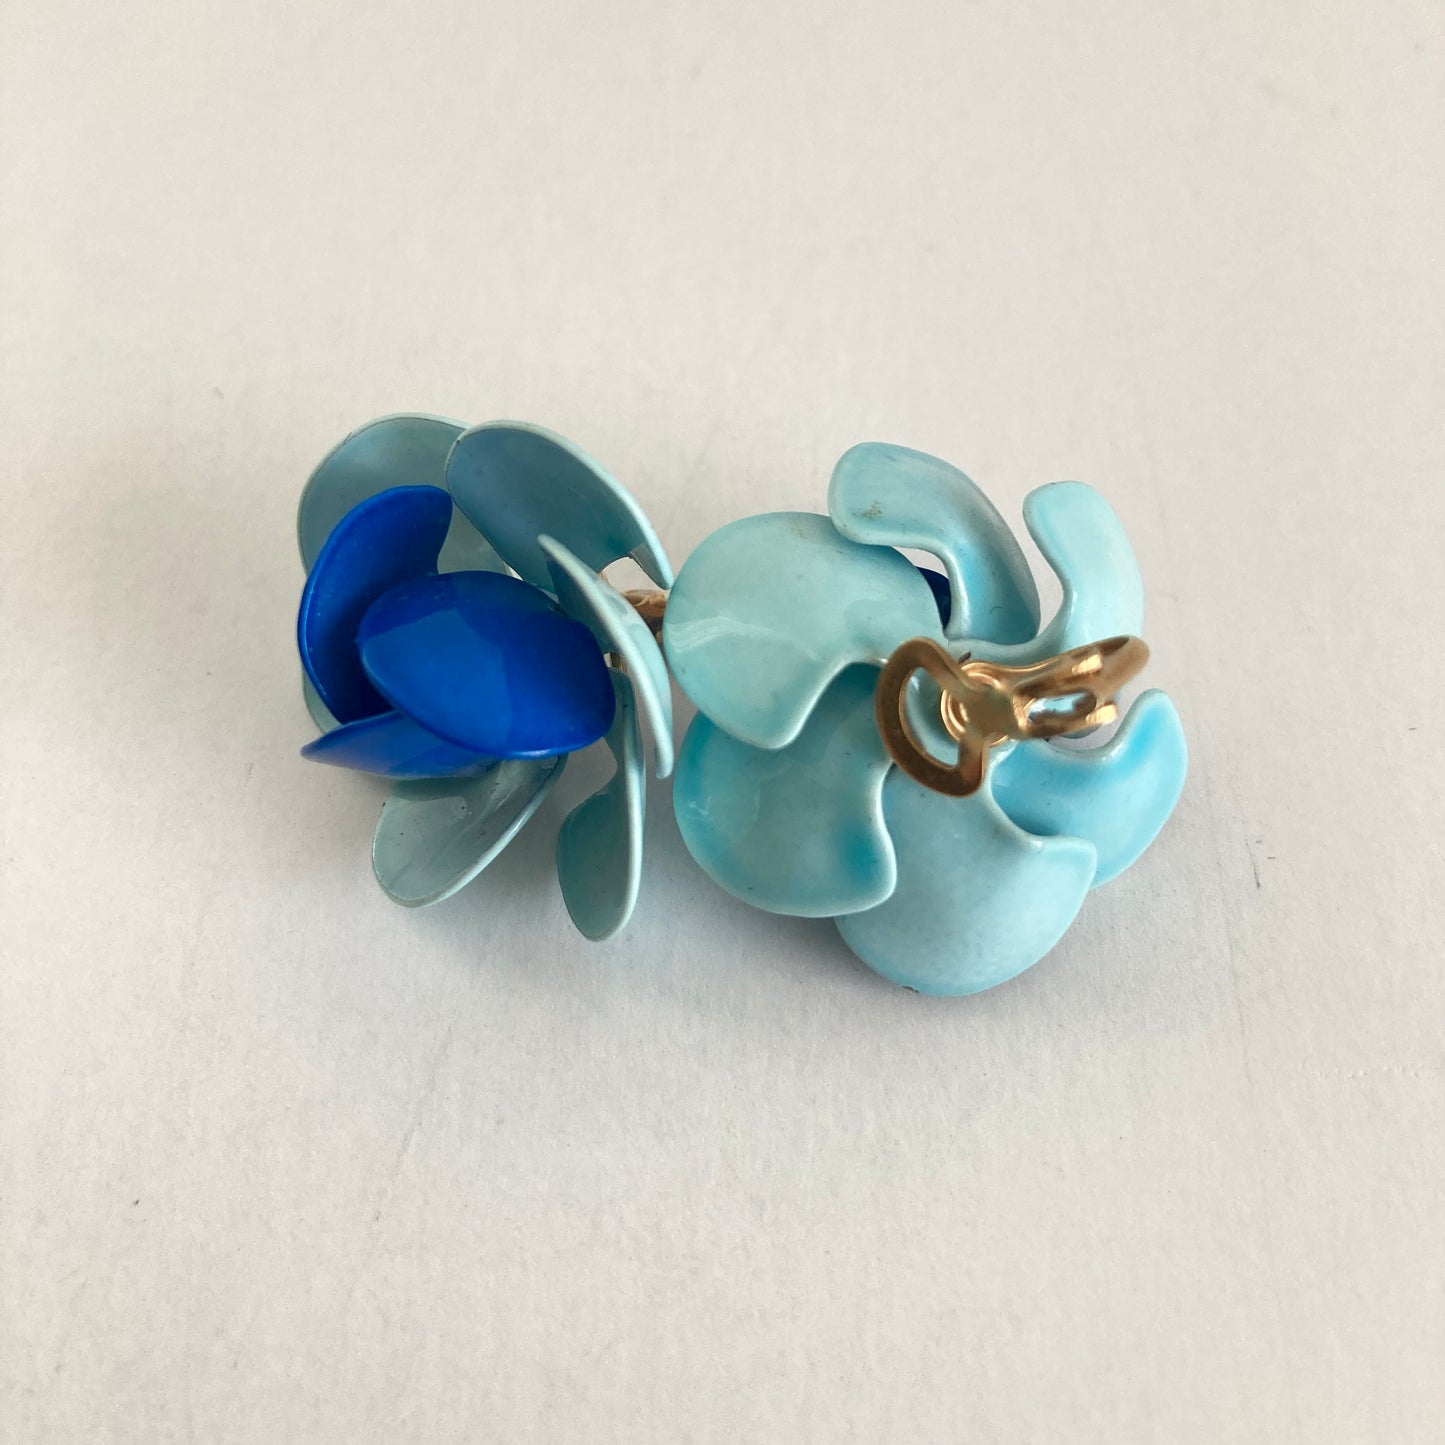 Two Tone Blue Enamel Flower Earrings Clip-on Style